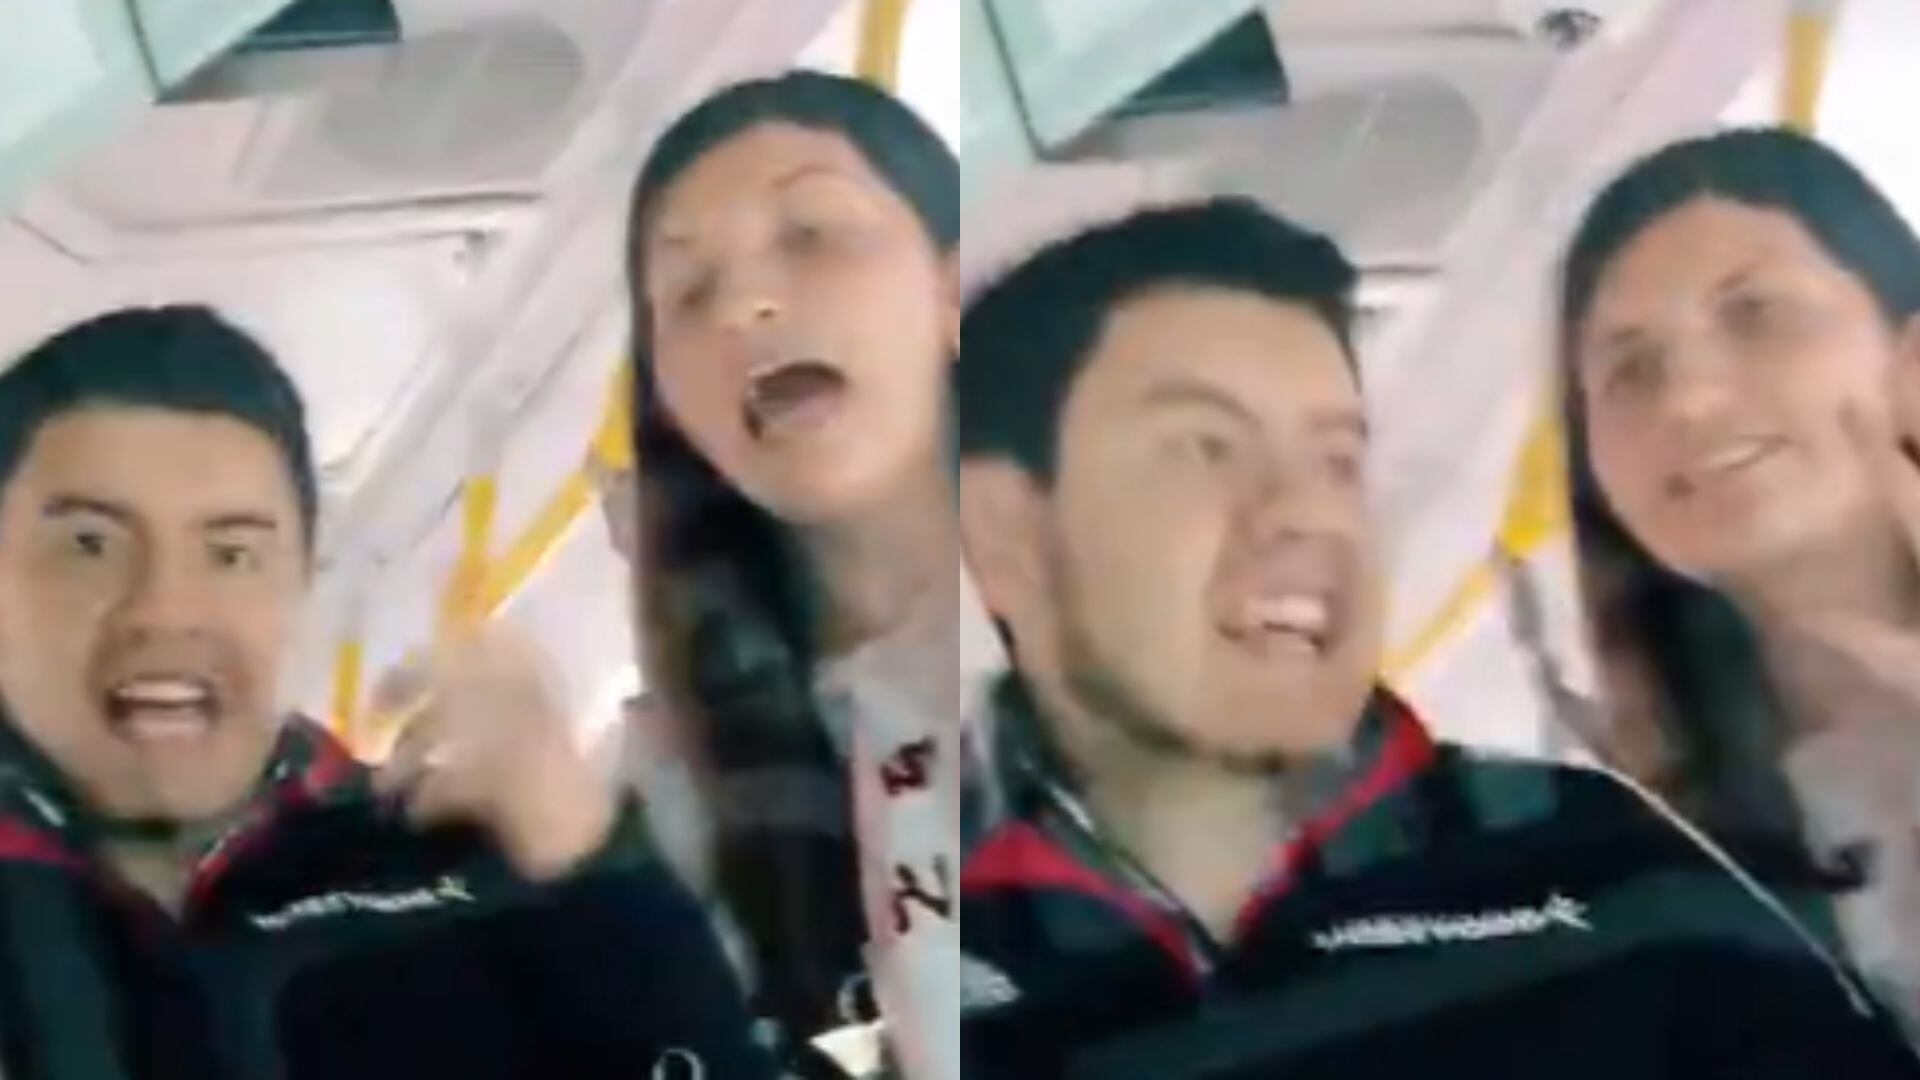 video | conductor de sitp confrontó a una pareja de colados: “en el cai los bajo, tranquilos”